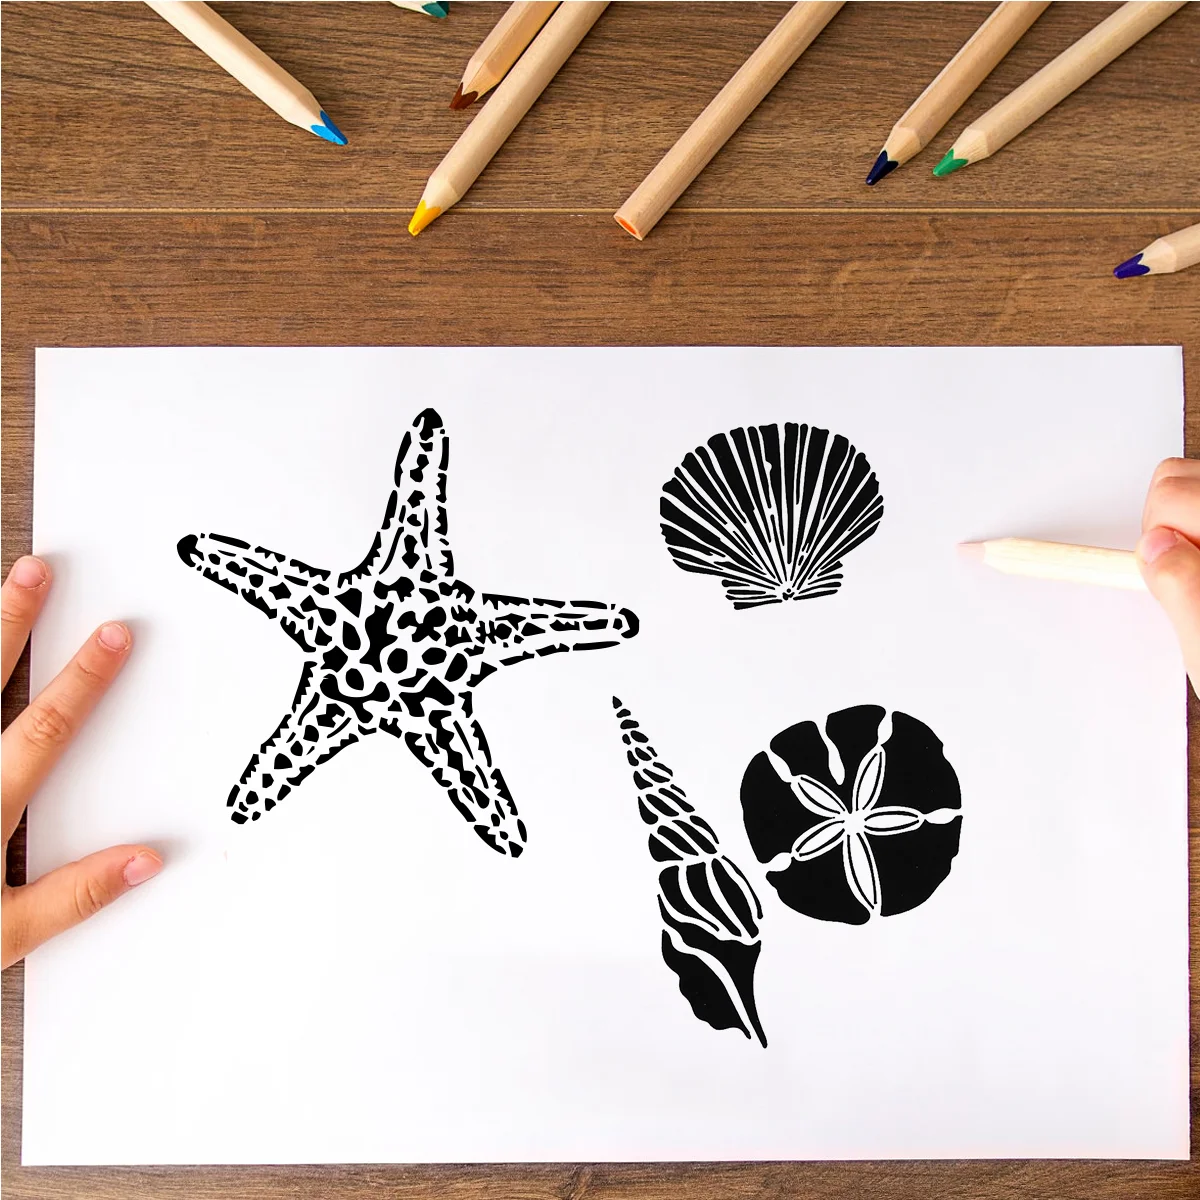 

Трафареты для рисования морскими звездами, морскими коньками, ракушками, вырезами, трафареты для журнала